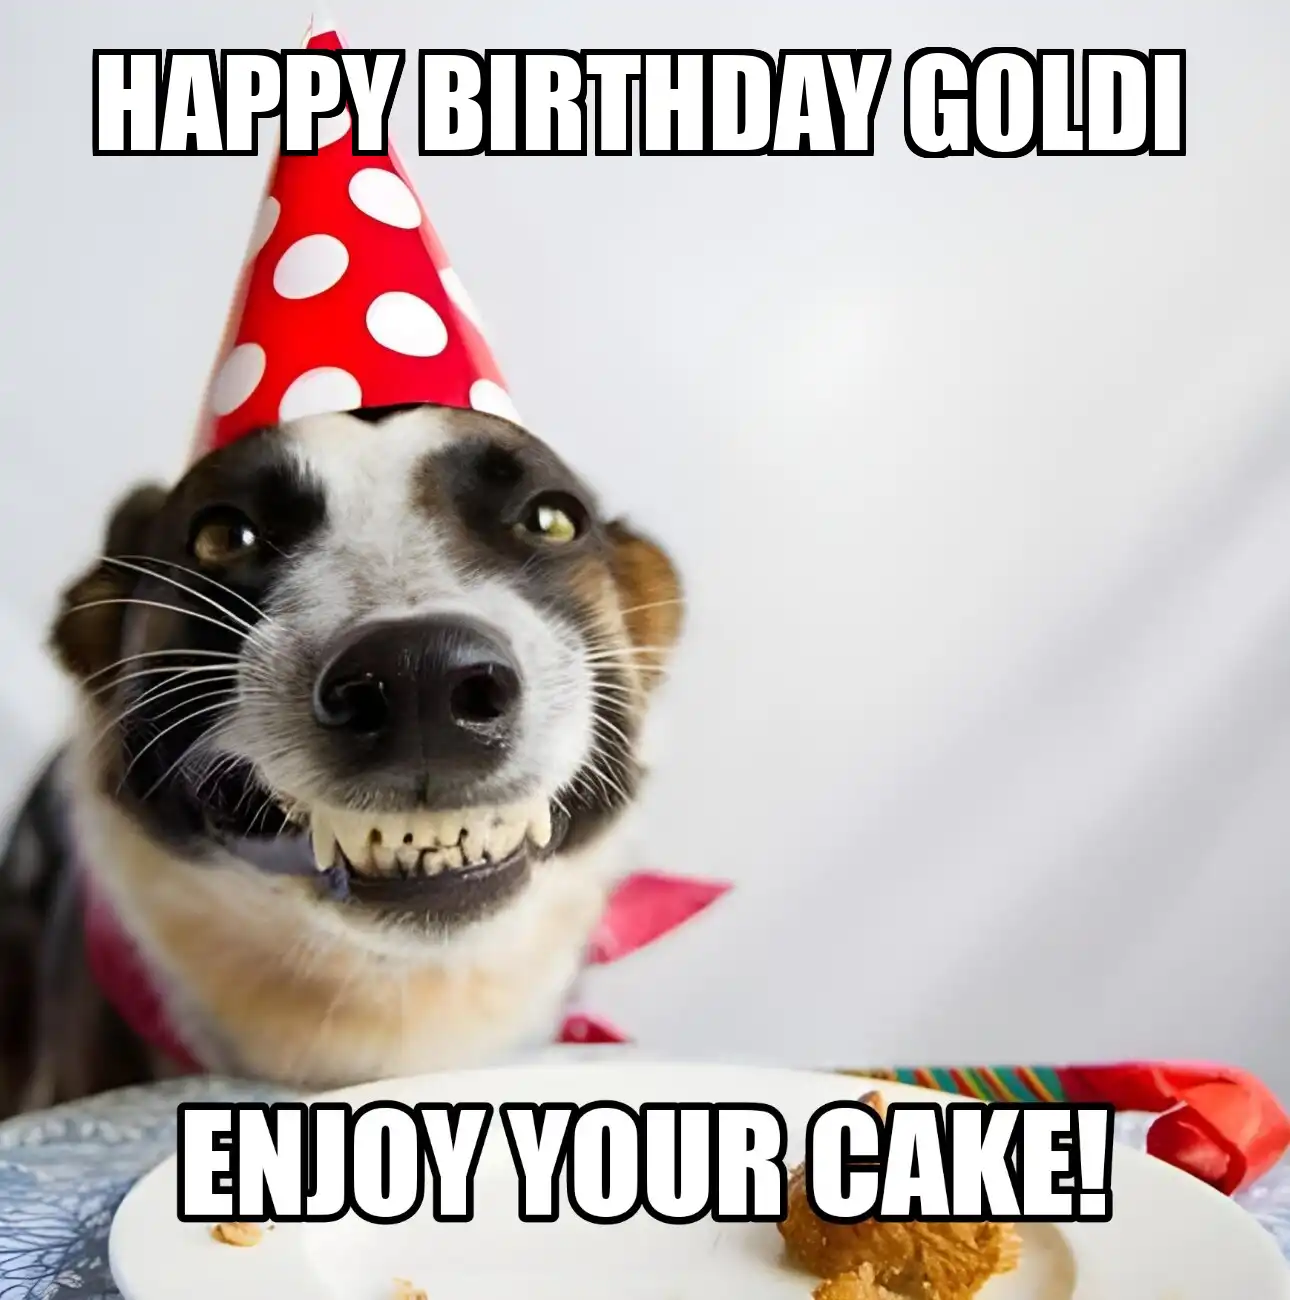 Happy Birthday Goldi Enjoy Your Cake Dog Meme